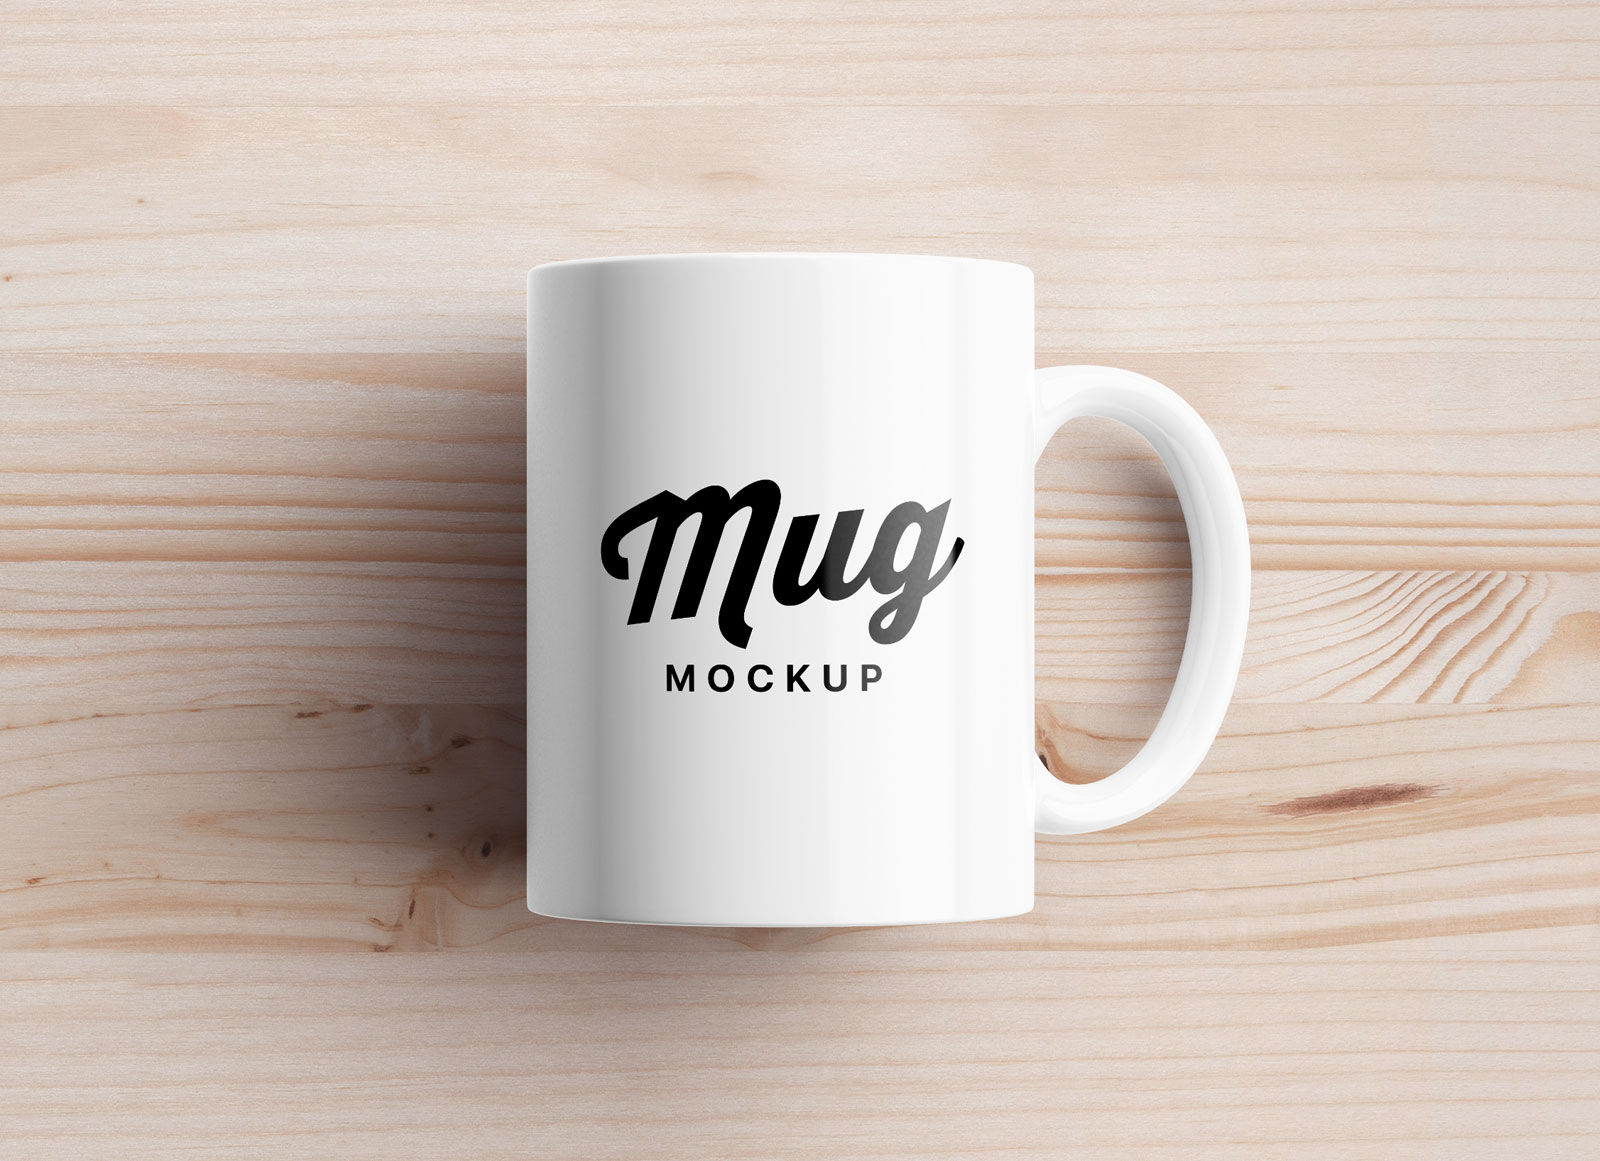  Download  Desain  Mug  Mockup Keren Format PSD Desain  Free 